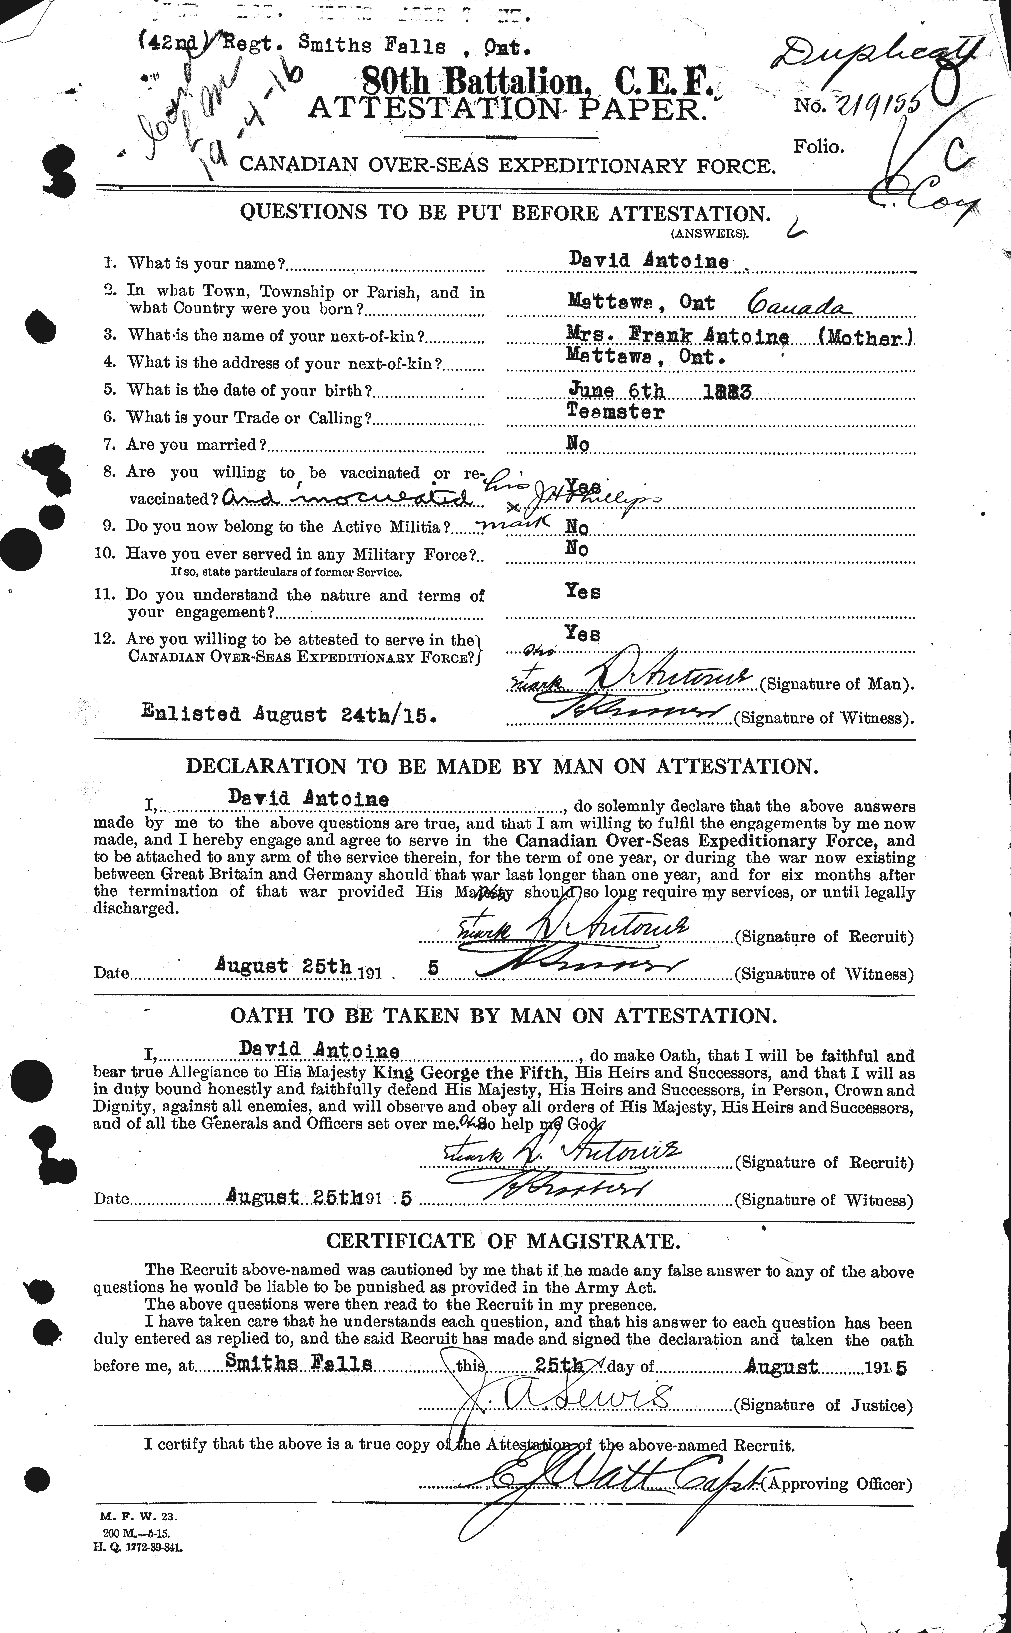 Dossiers du Personnel de la Première Guerre mondiale - CEC 212119a